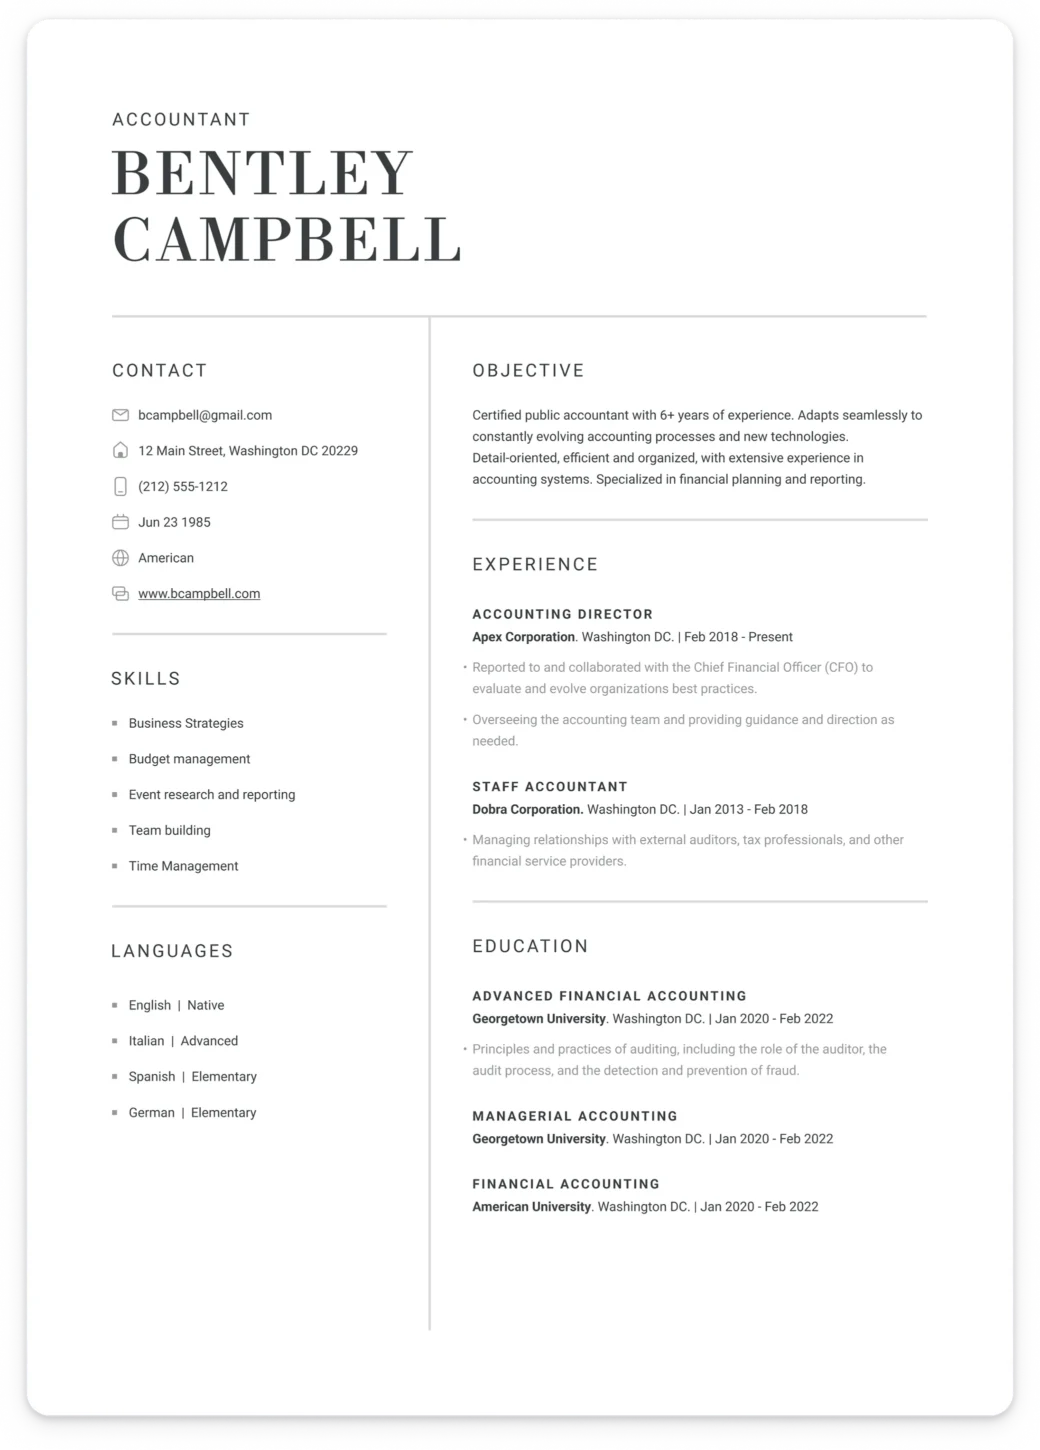 cover letter builder resume.com